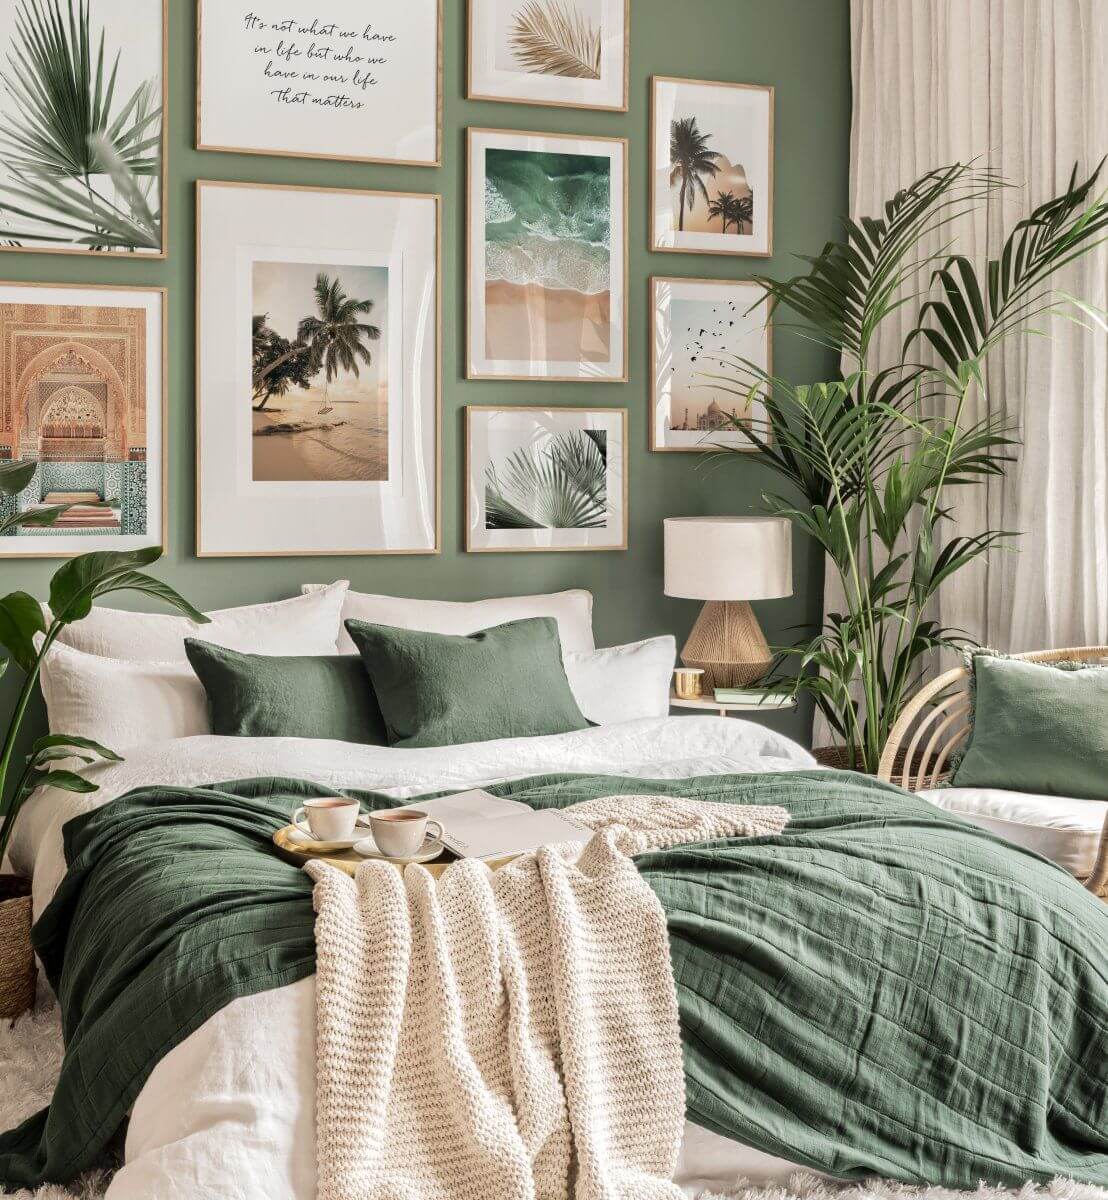 голландская в тропическом стиле спальня